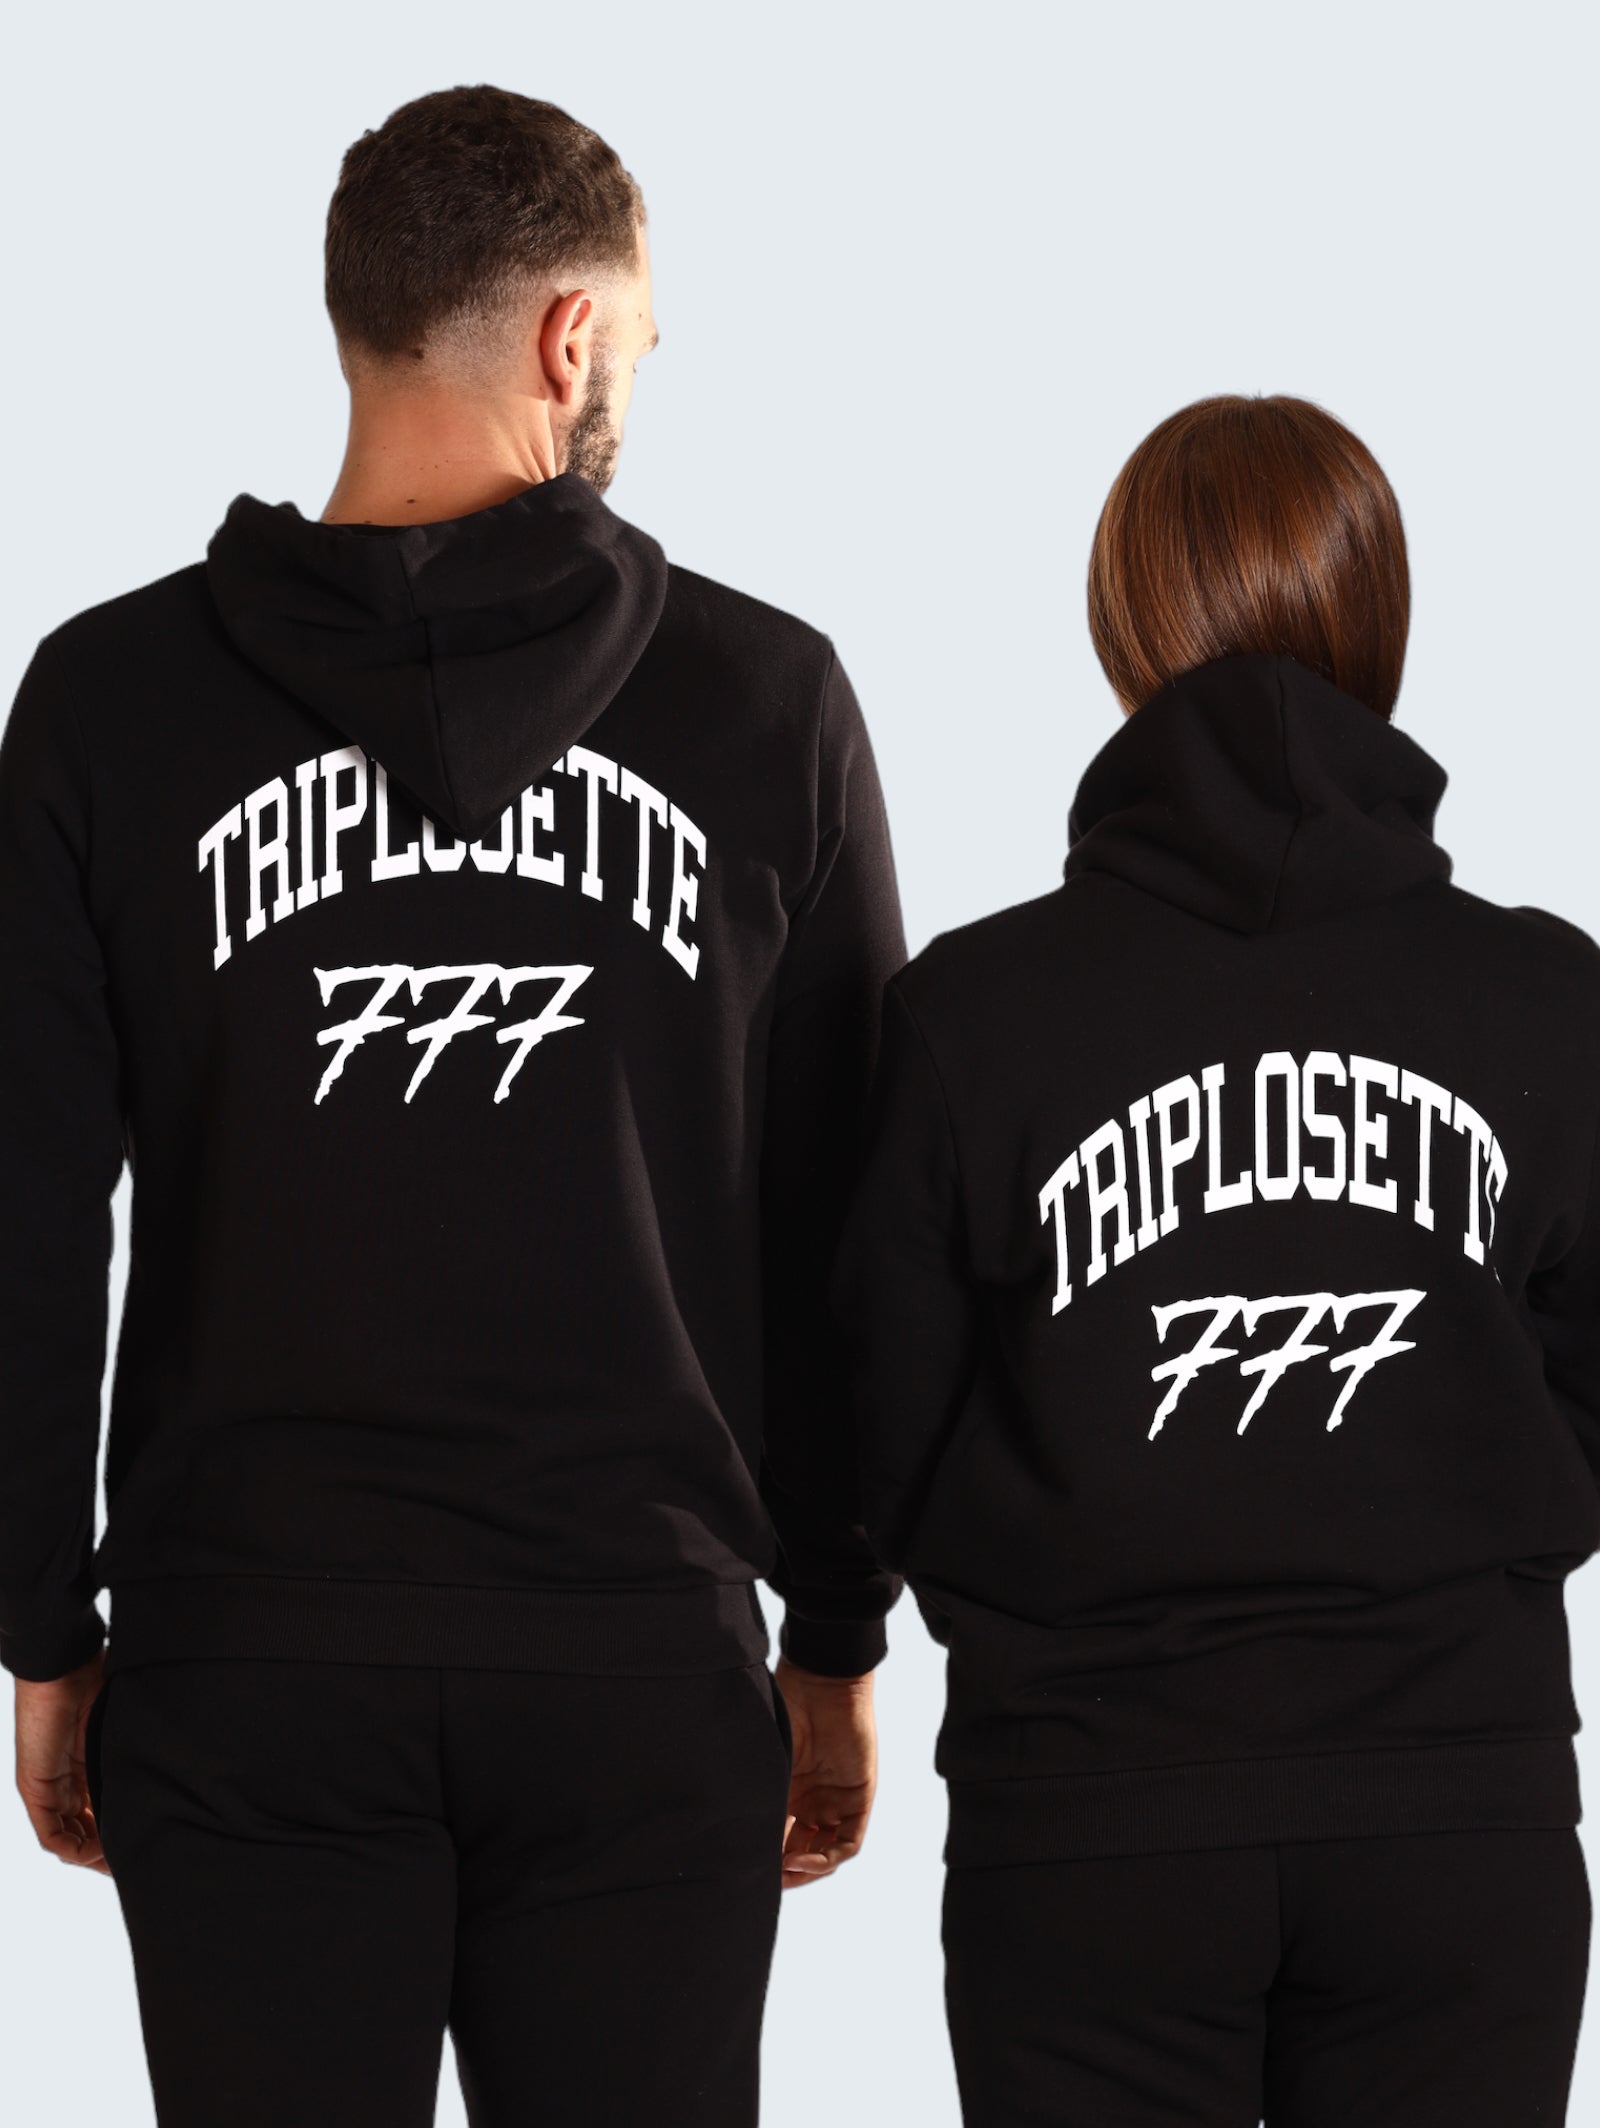 Triplosette Sweatshirt Trsm655 Black